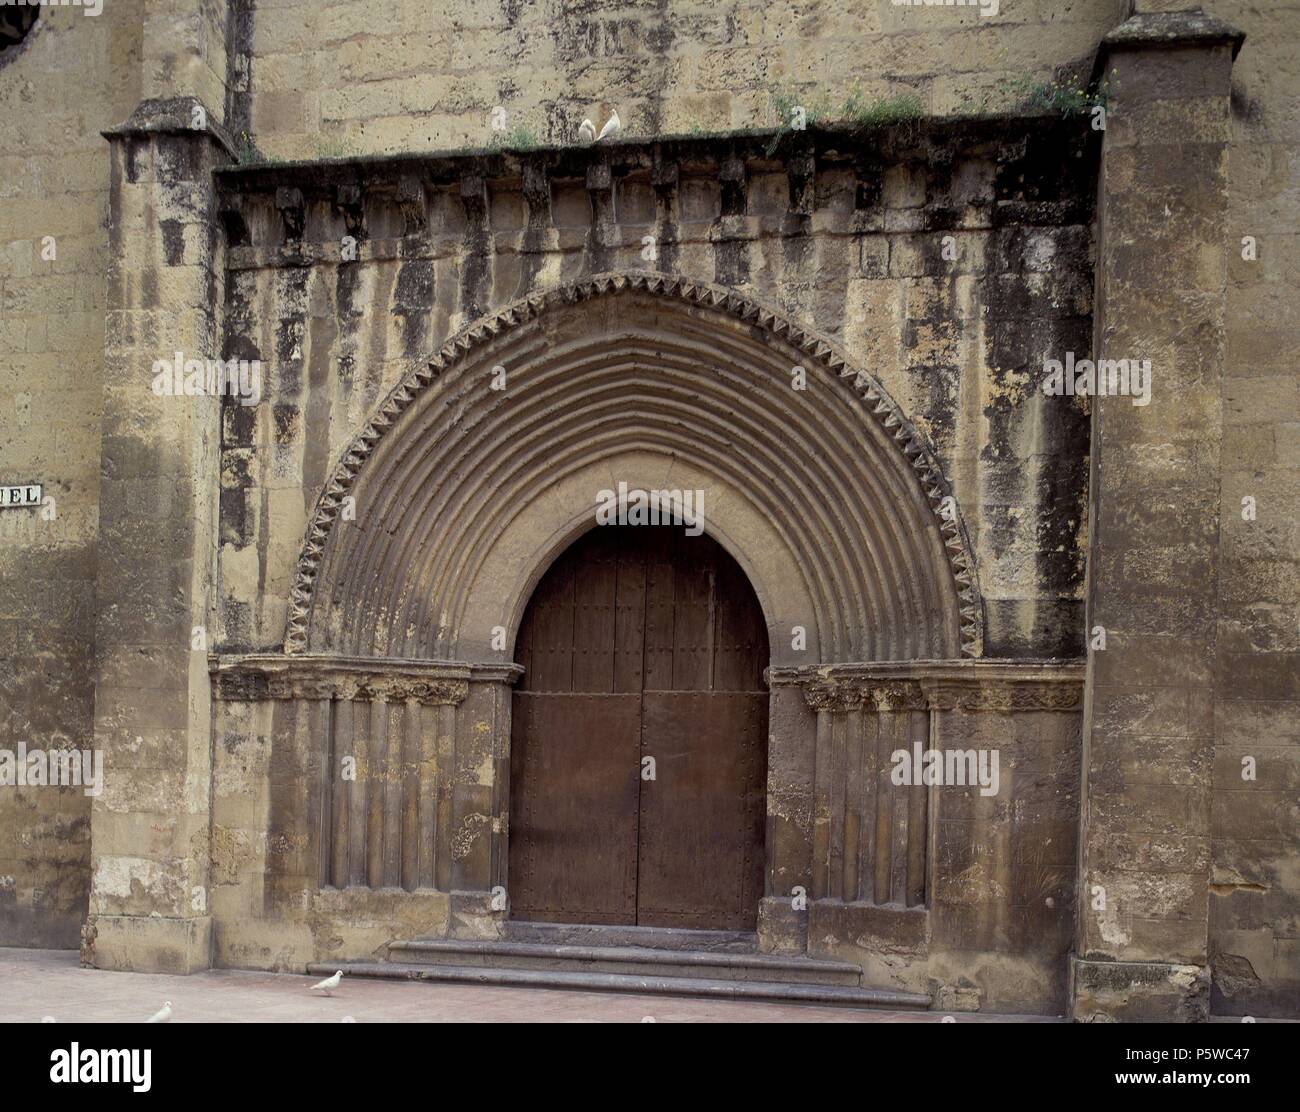 PORTADA PRINCIPAL CON OCULO-gotico. Posizione: ST. MICHAEL è la Chiesa, Cordoba, Spagna. Foto Stock